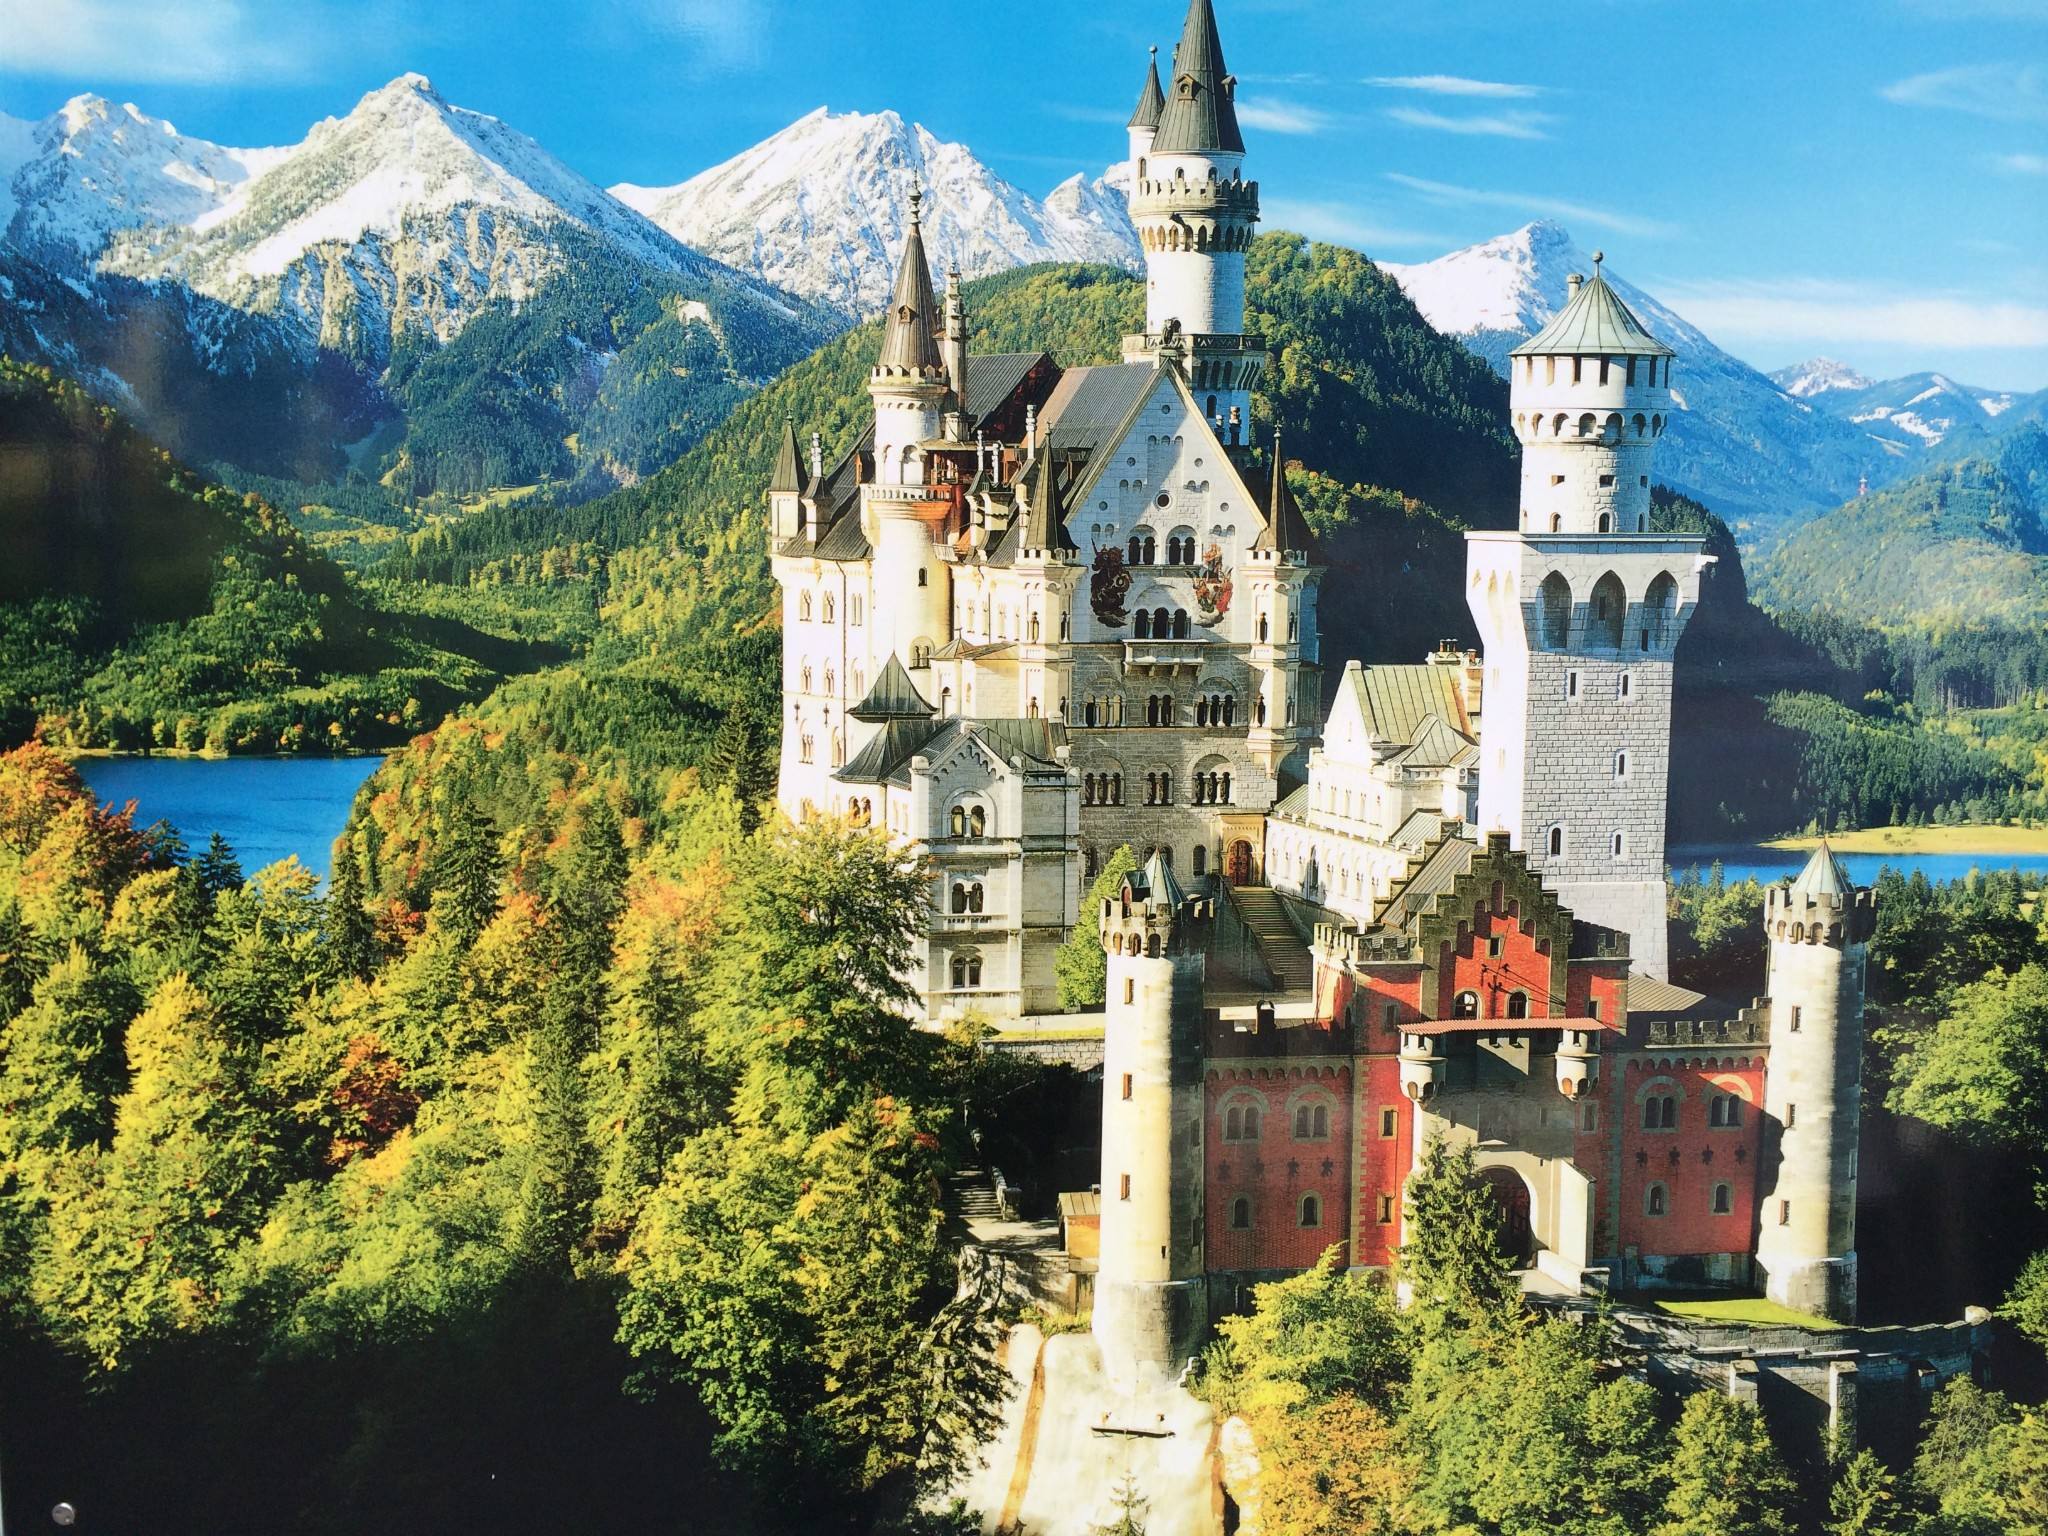 欧洲十大最美城堡,看到第3个就想嫁了!宛如人间仙境,不真实!